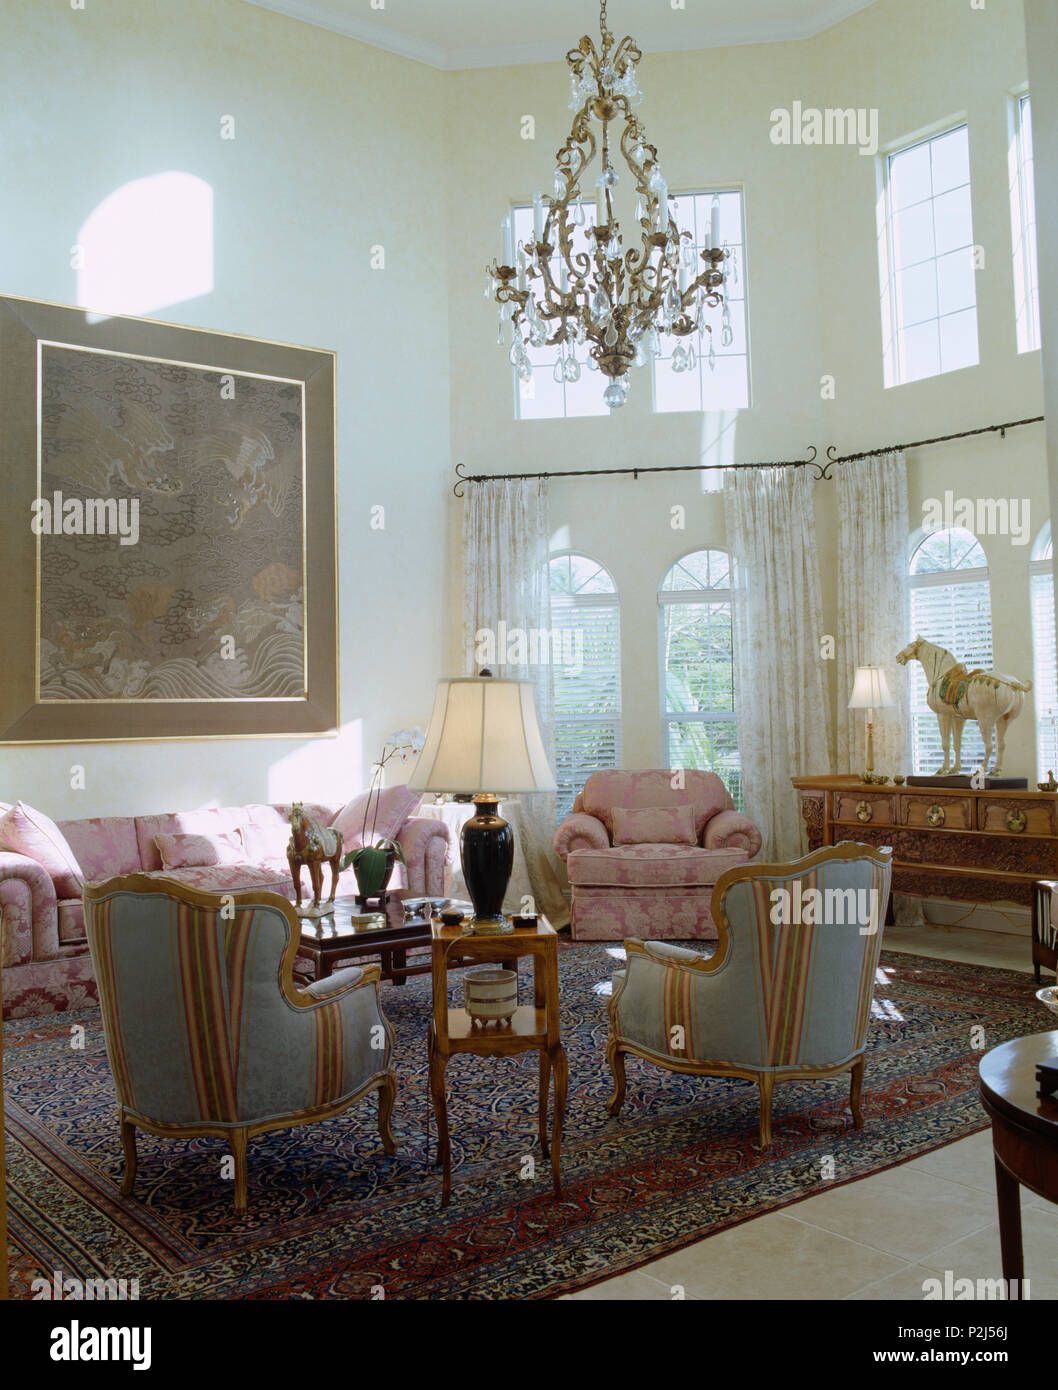 Poltrone e divani rosa sul tappeto in altezza doppia stanza di seduta Foto Stock